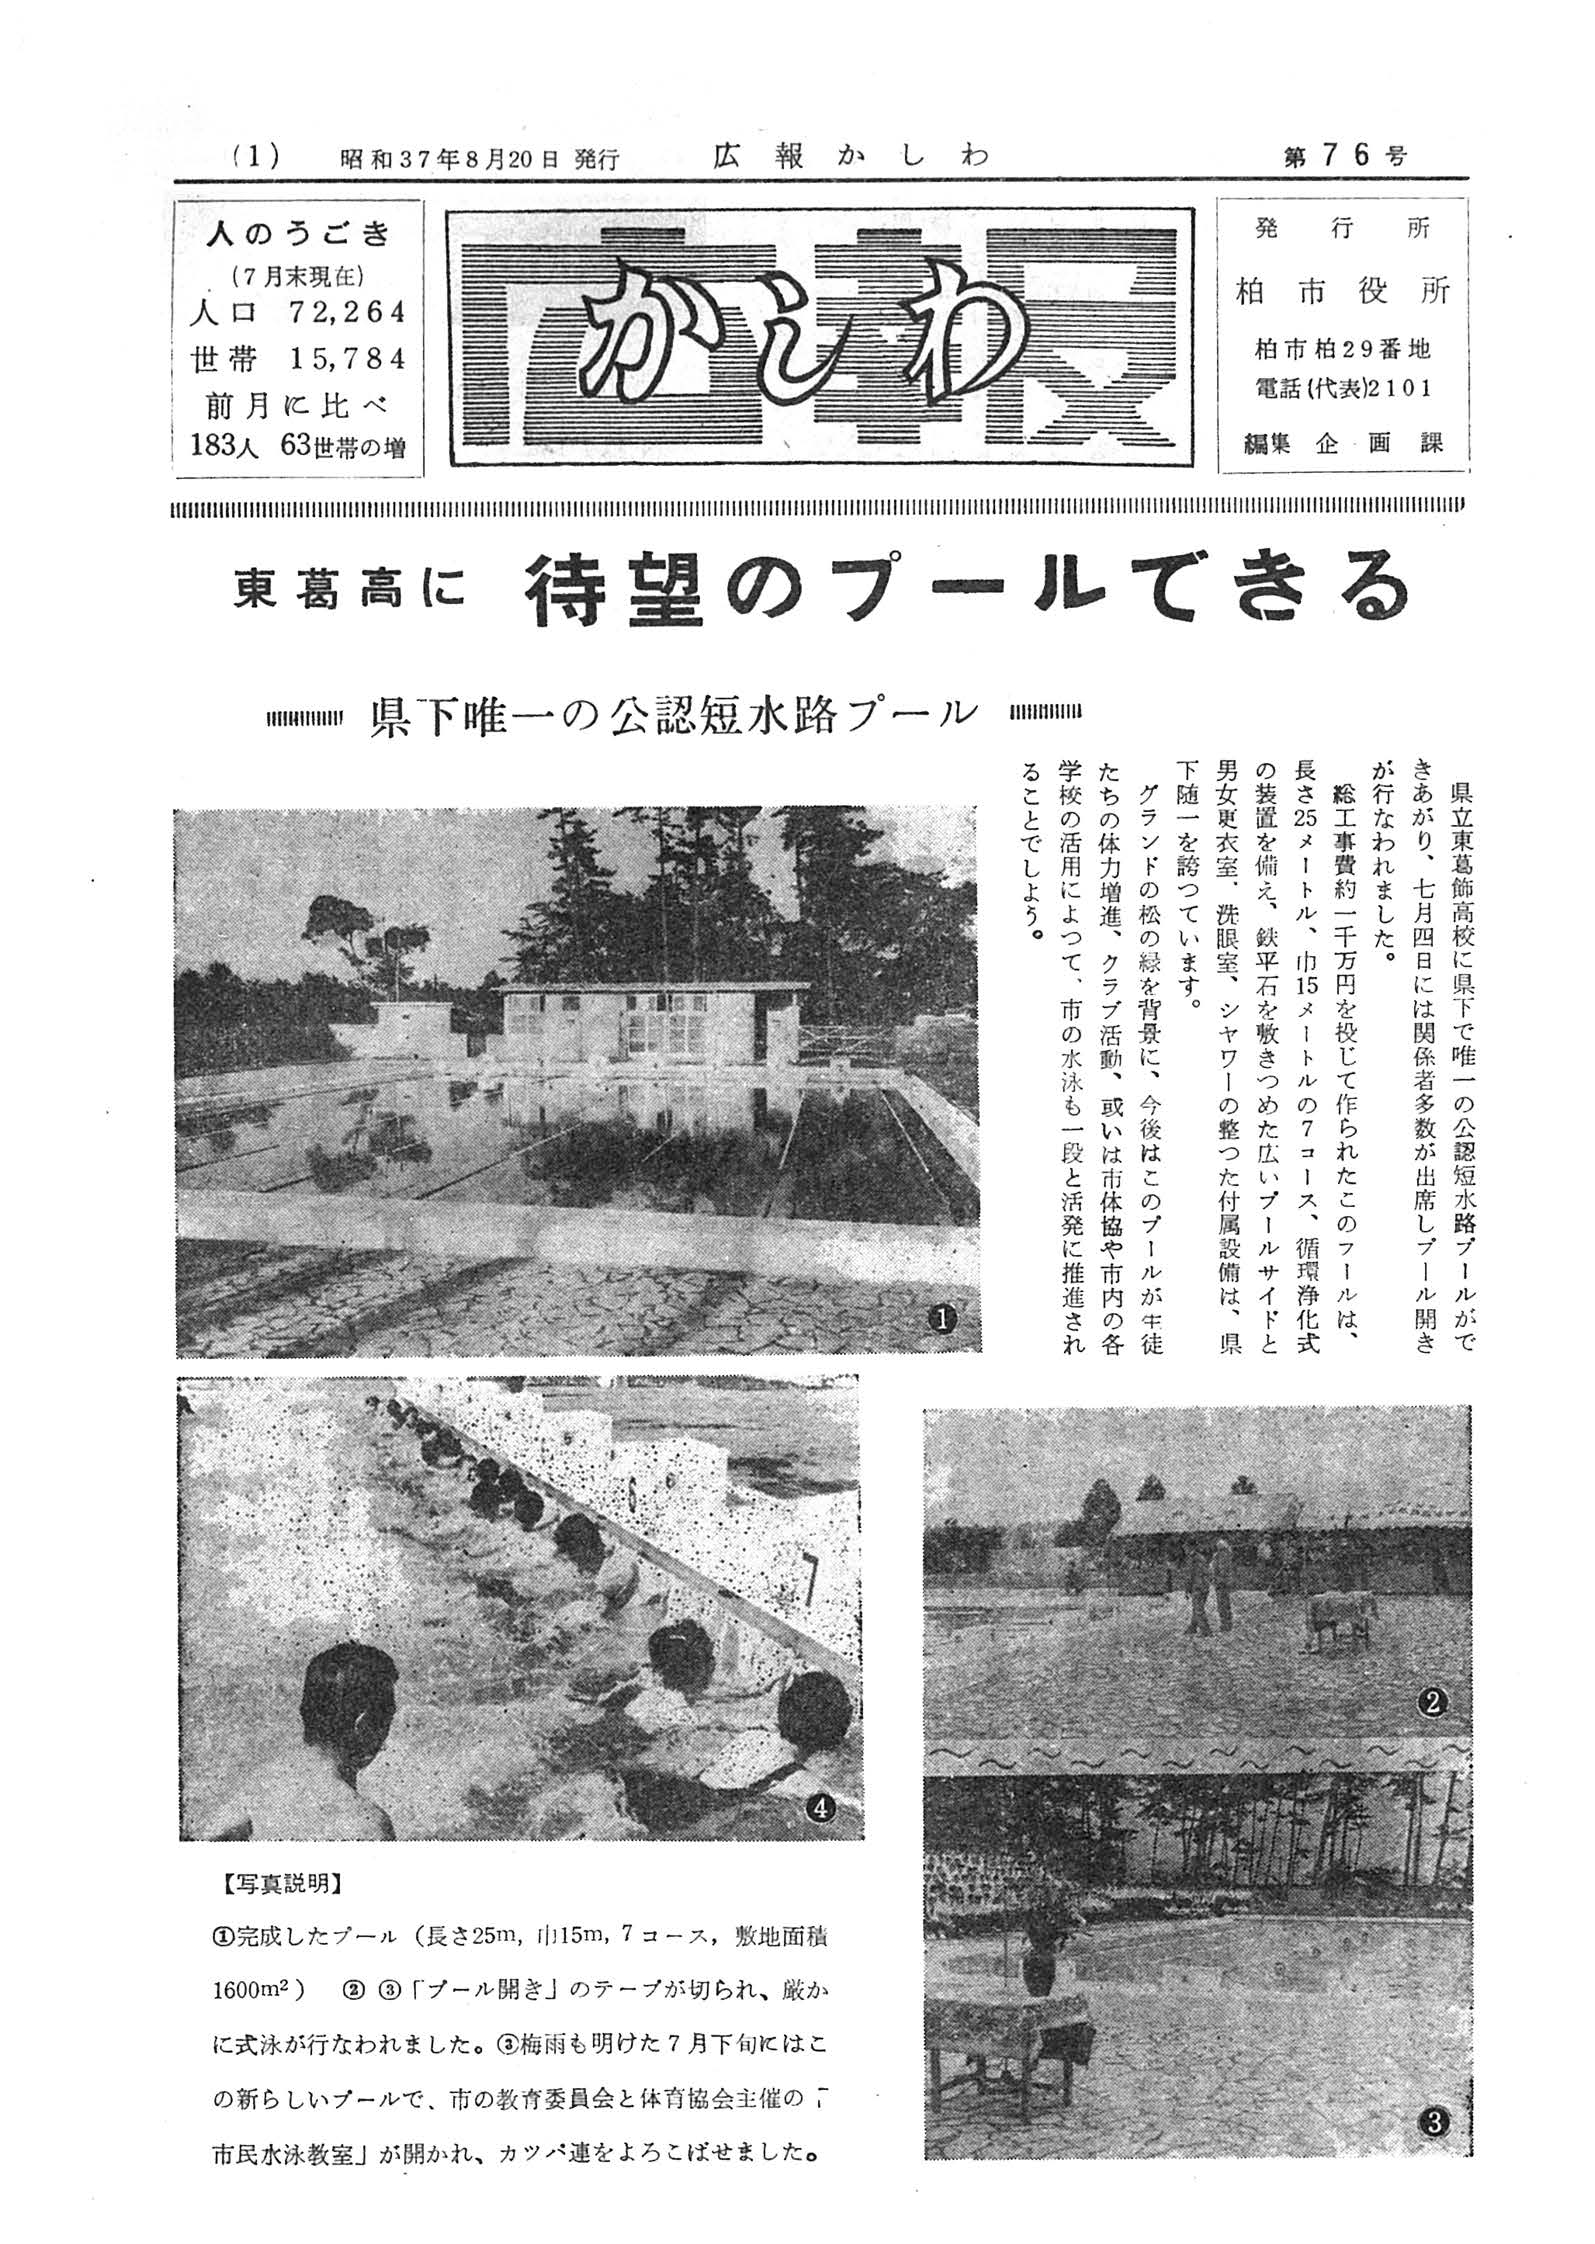 広報かしわ　昭和37年8月20日発行　76号